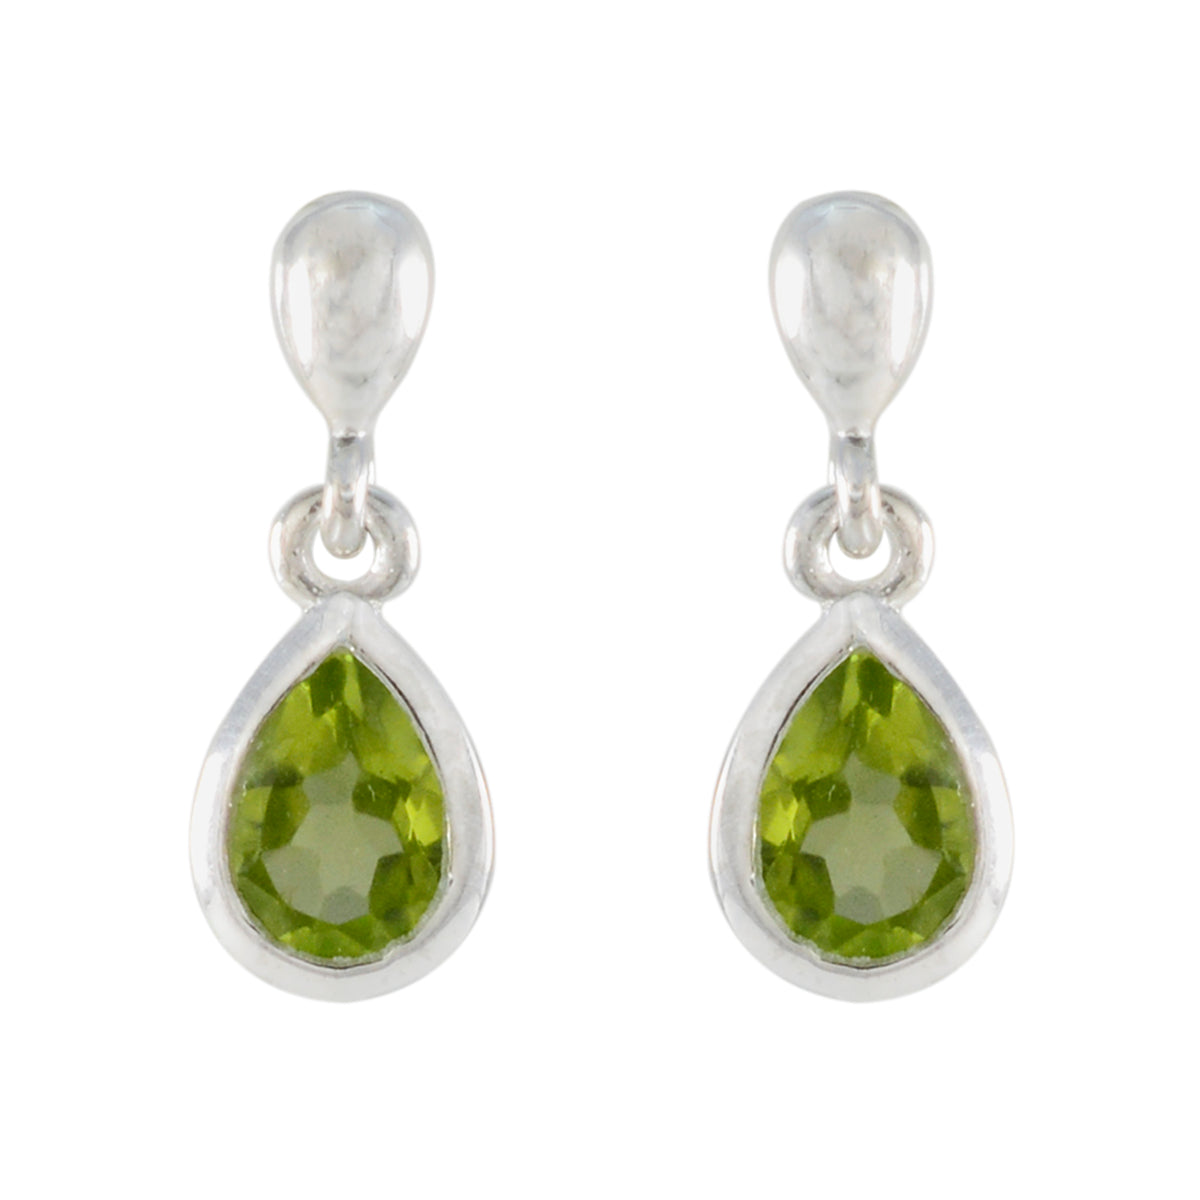 Riyo Beguiling Sterling Silver Earring For Wife Peridot Earring Bezel Setting Green Earring Stud Earring